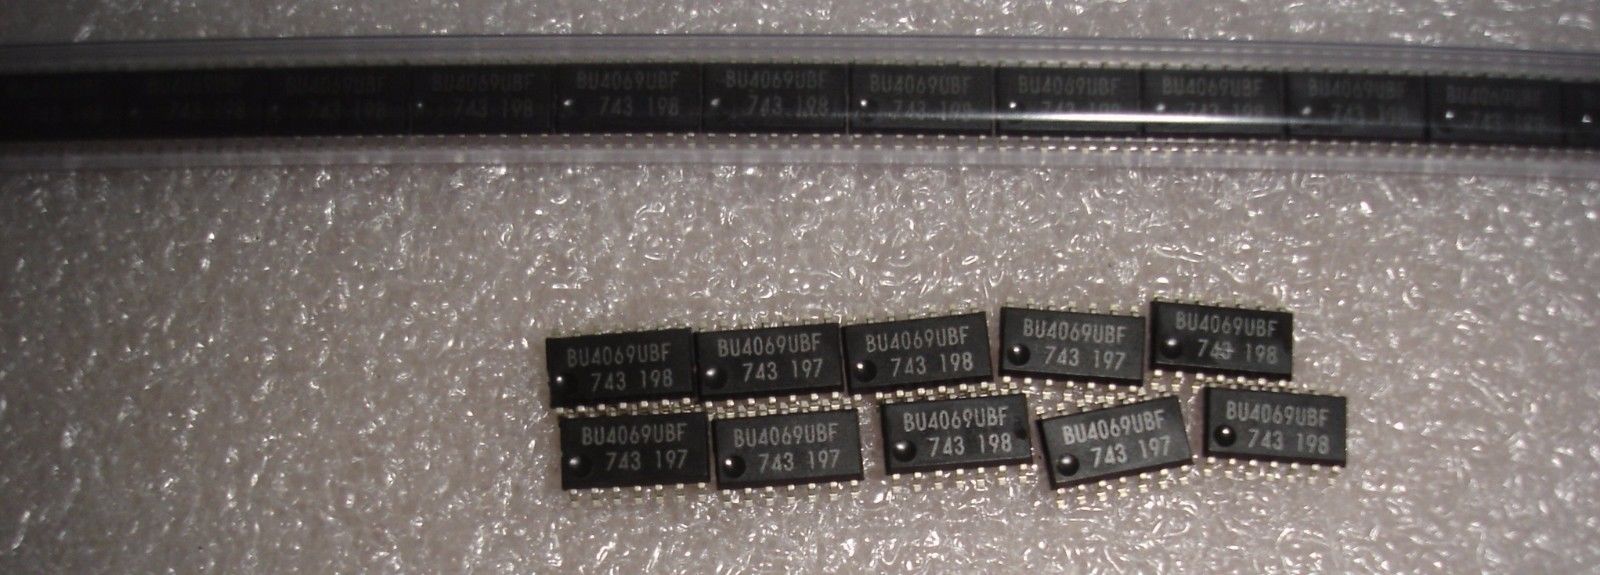 100PCS CD4069UBM HCF4069UBM HEF4069UBT SOP-14 Integrated Circuits ICs